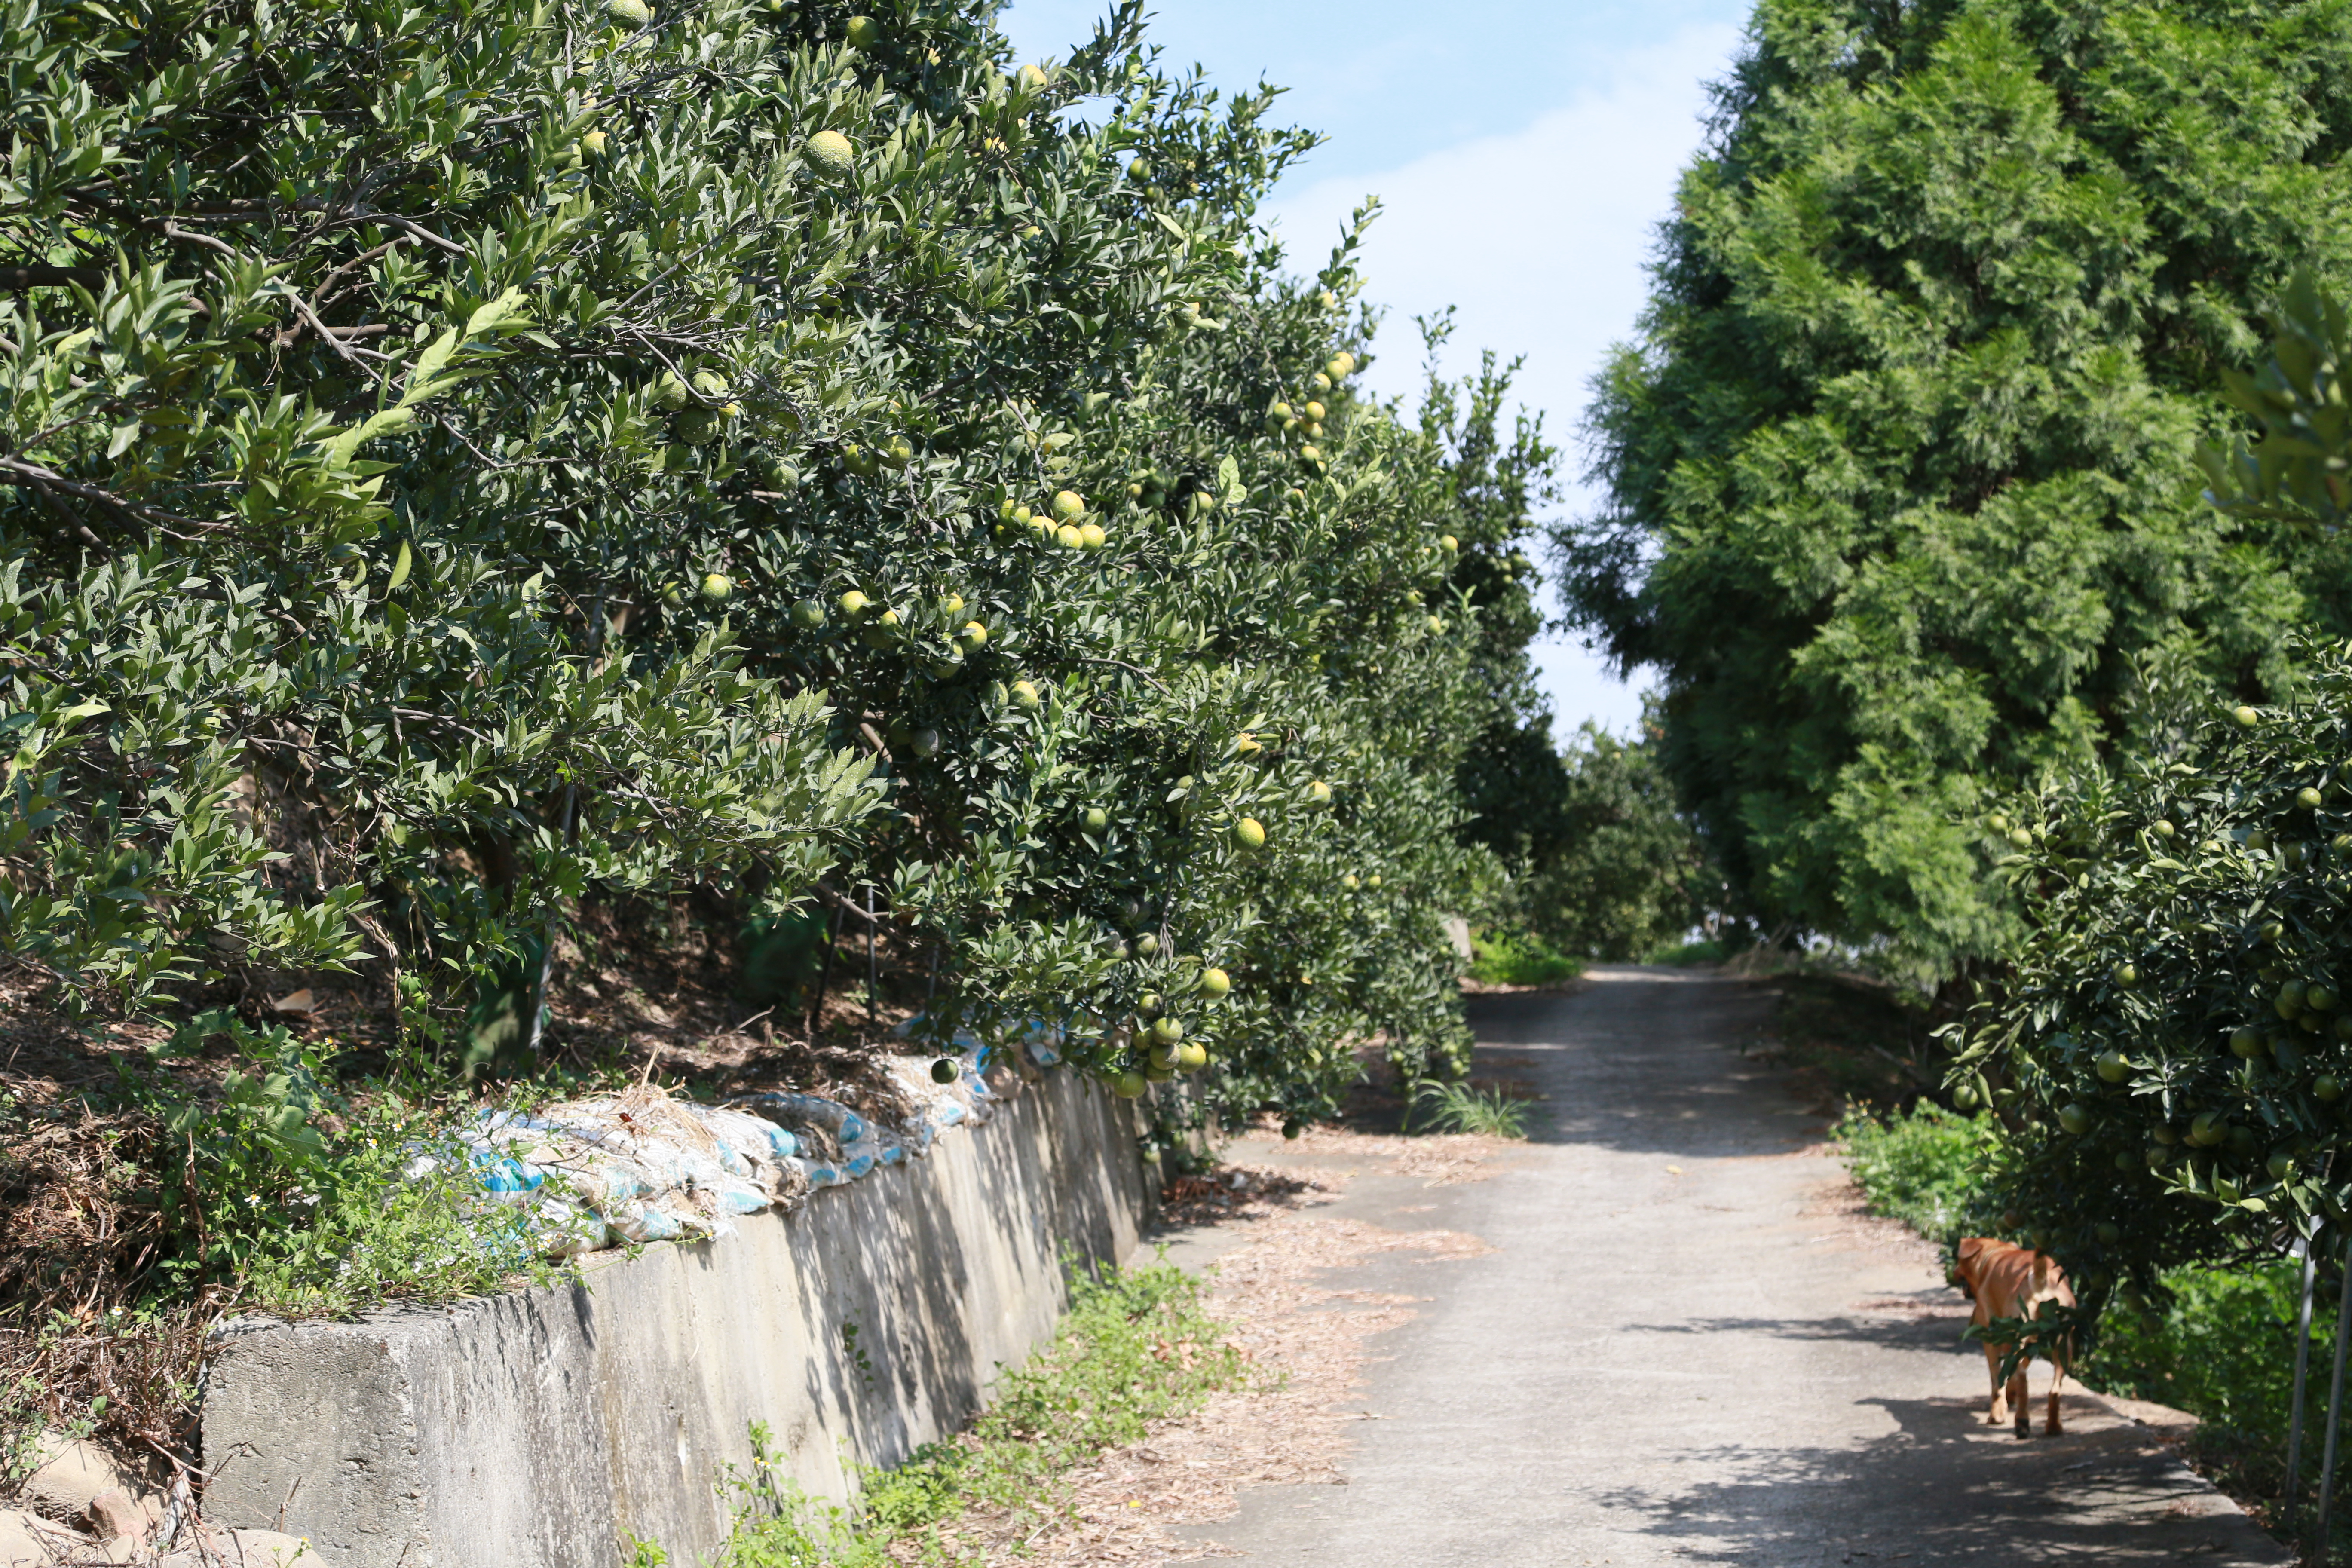 農場附近果園沿著山坡栽種果樹，果實纍纍點綴景色。